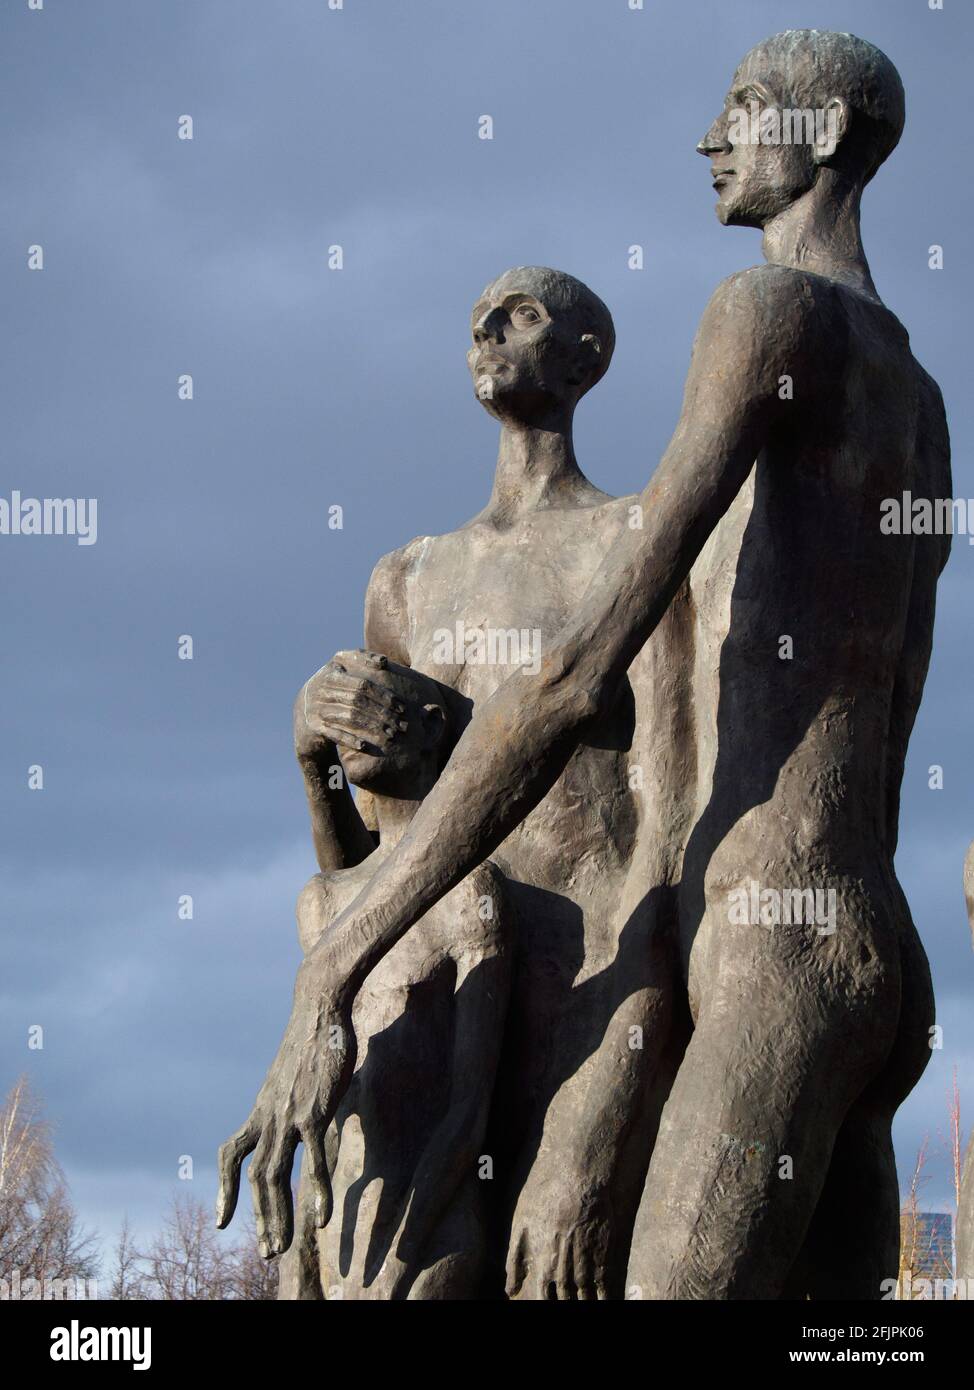 Le monument de la tragédie des peuples du Parc de la victoire est dédié à toutes les victimes des camps de concentration nazis. Banque D'Images